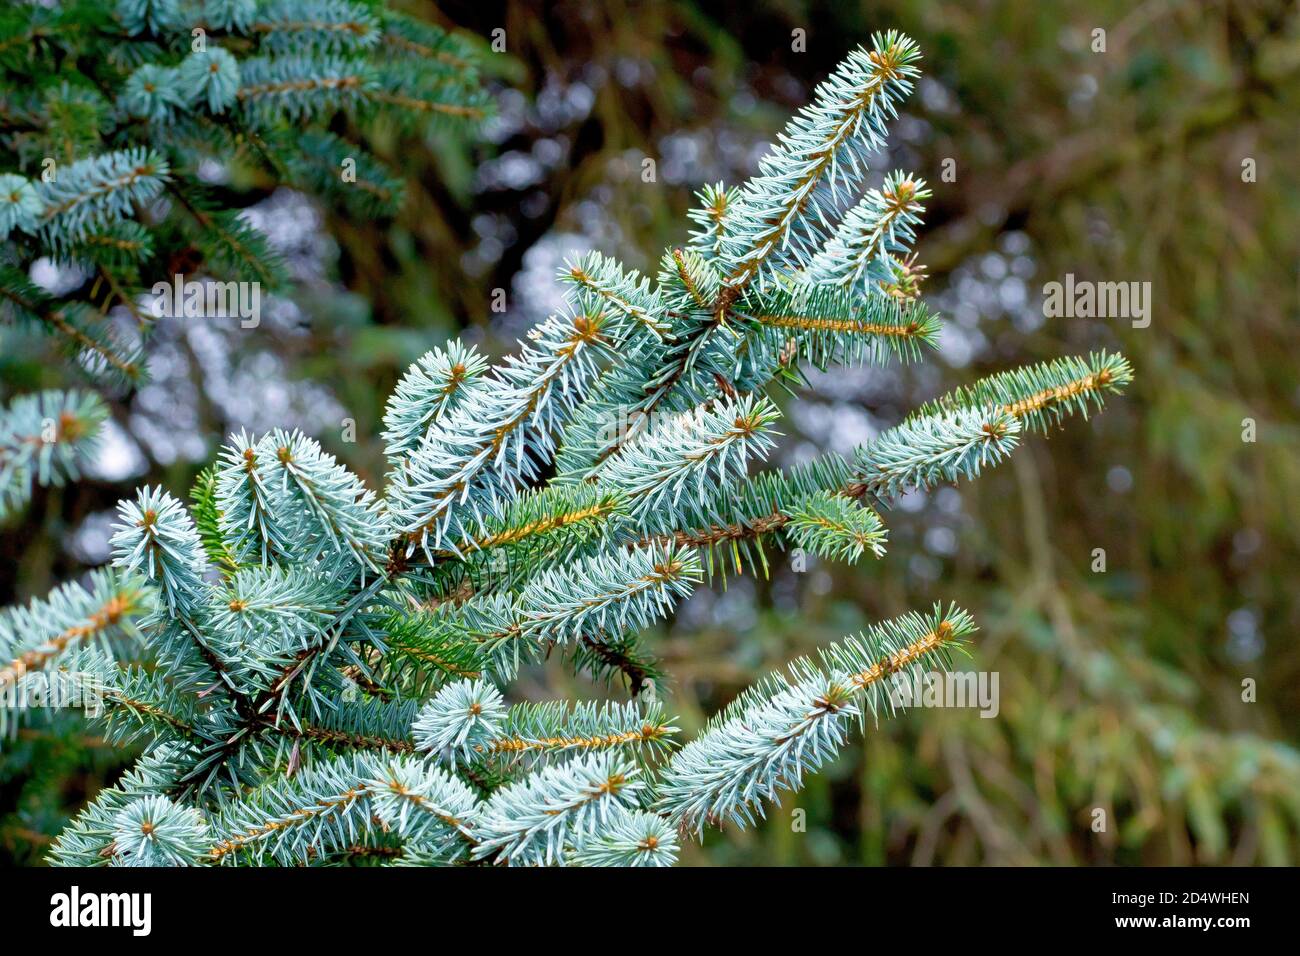 L'épinette de Sitka (picea sitchensis), qui montre une branche des aiguilles nettement bleutées de l'arbre. Banque D'Images